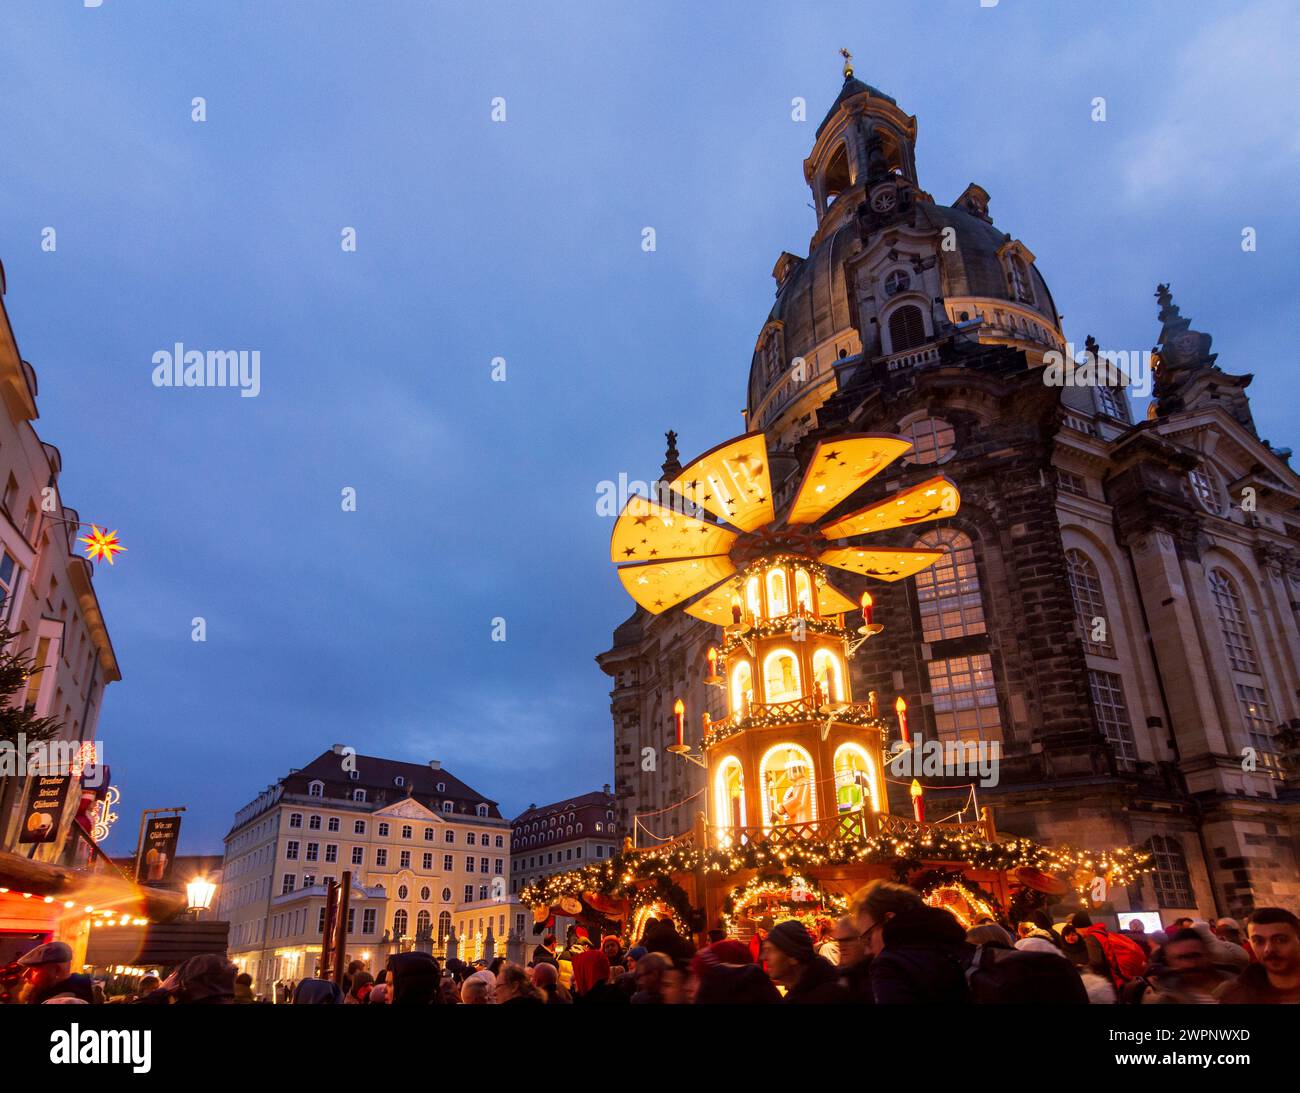 Dresde, marché de Noël sur la place Neumarkt, église Frauenkirche, pyramide de noël comme stand de vente, Saxe, Allemagne Banque D'Images